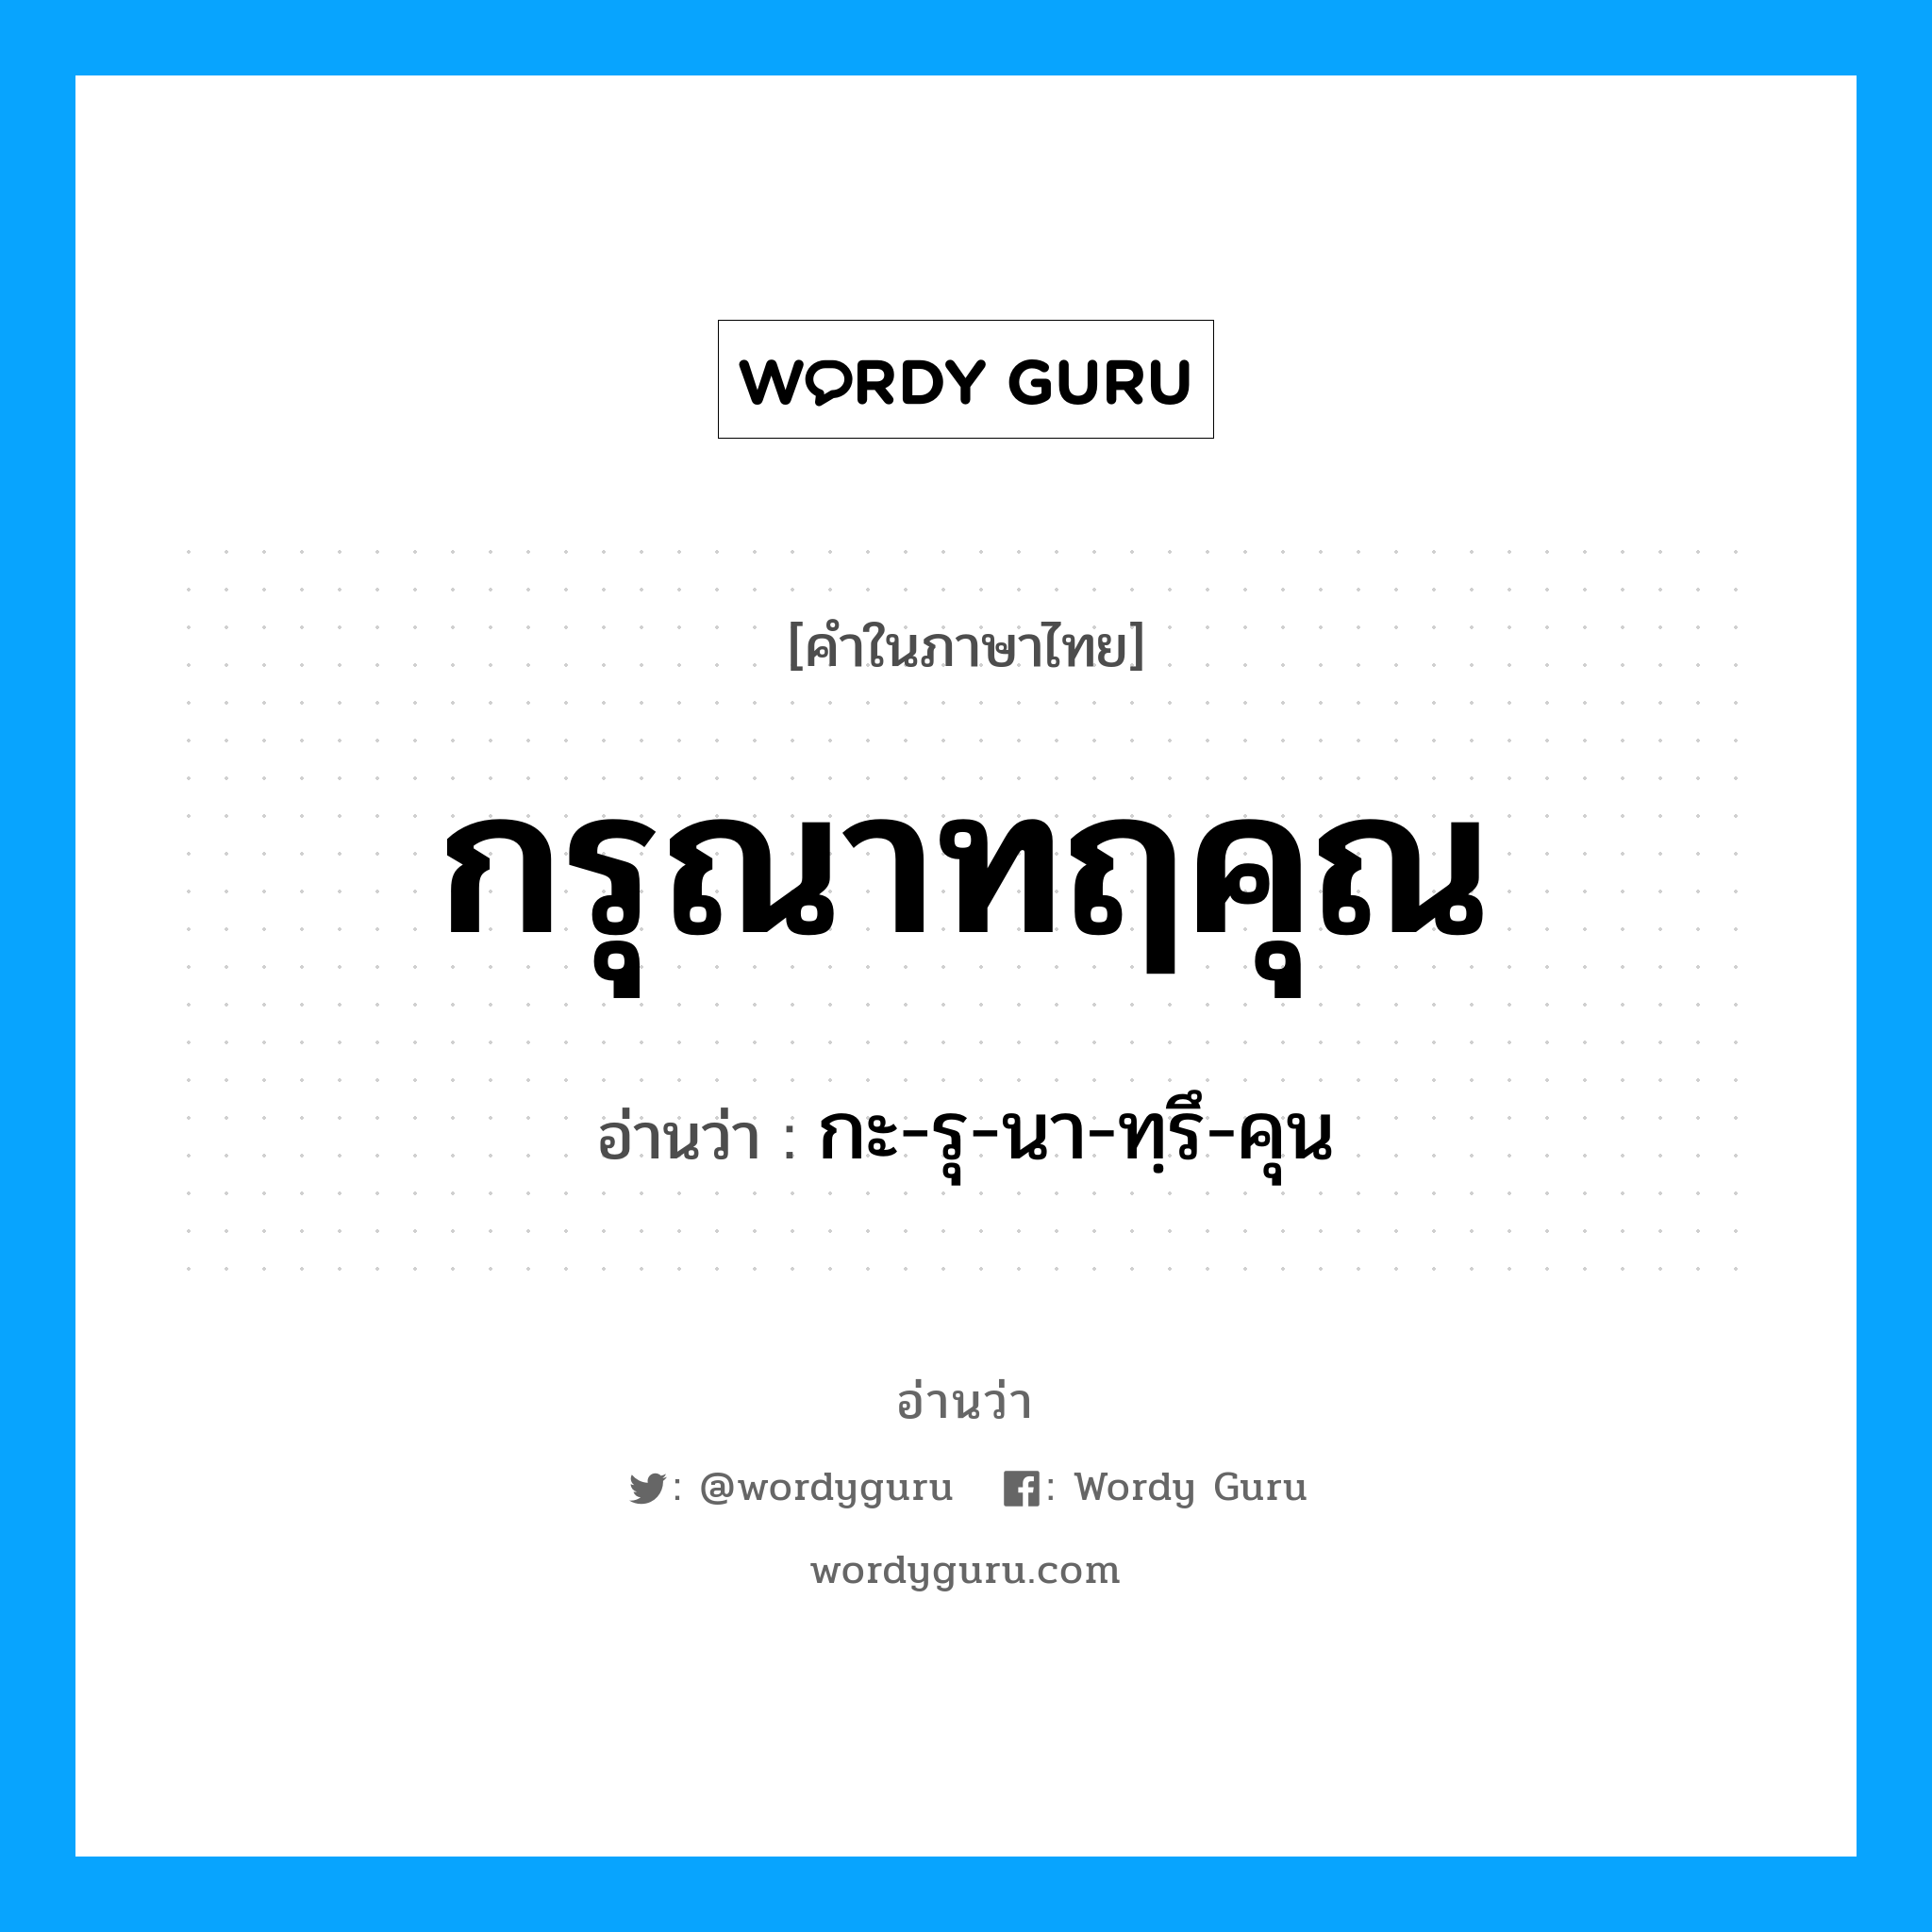 กะ-รุ-นา-ทฺรึ-คุน เป็นคำอ่านของคำไหน?, คำในภาษาไทย กะ-รุ-นา-ทฺรึ-คุน อ่านว่า กรุณาทฤคุณ